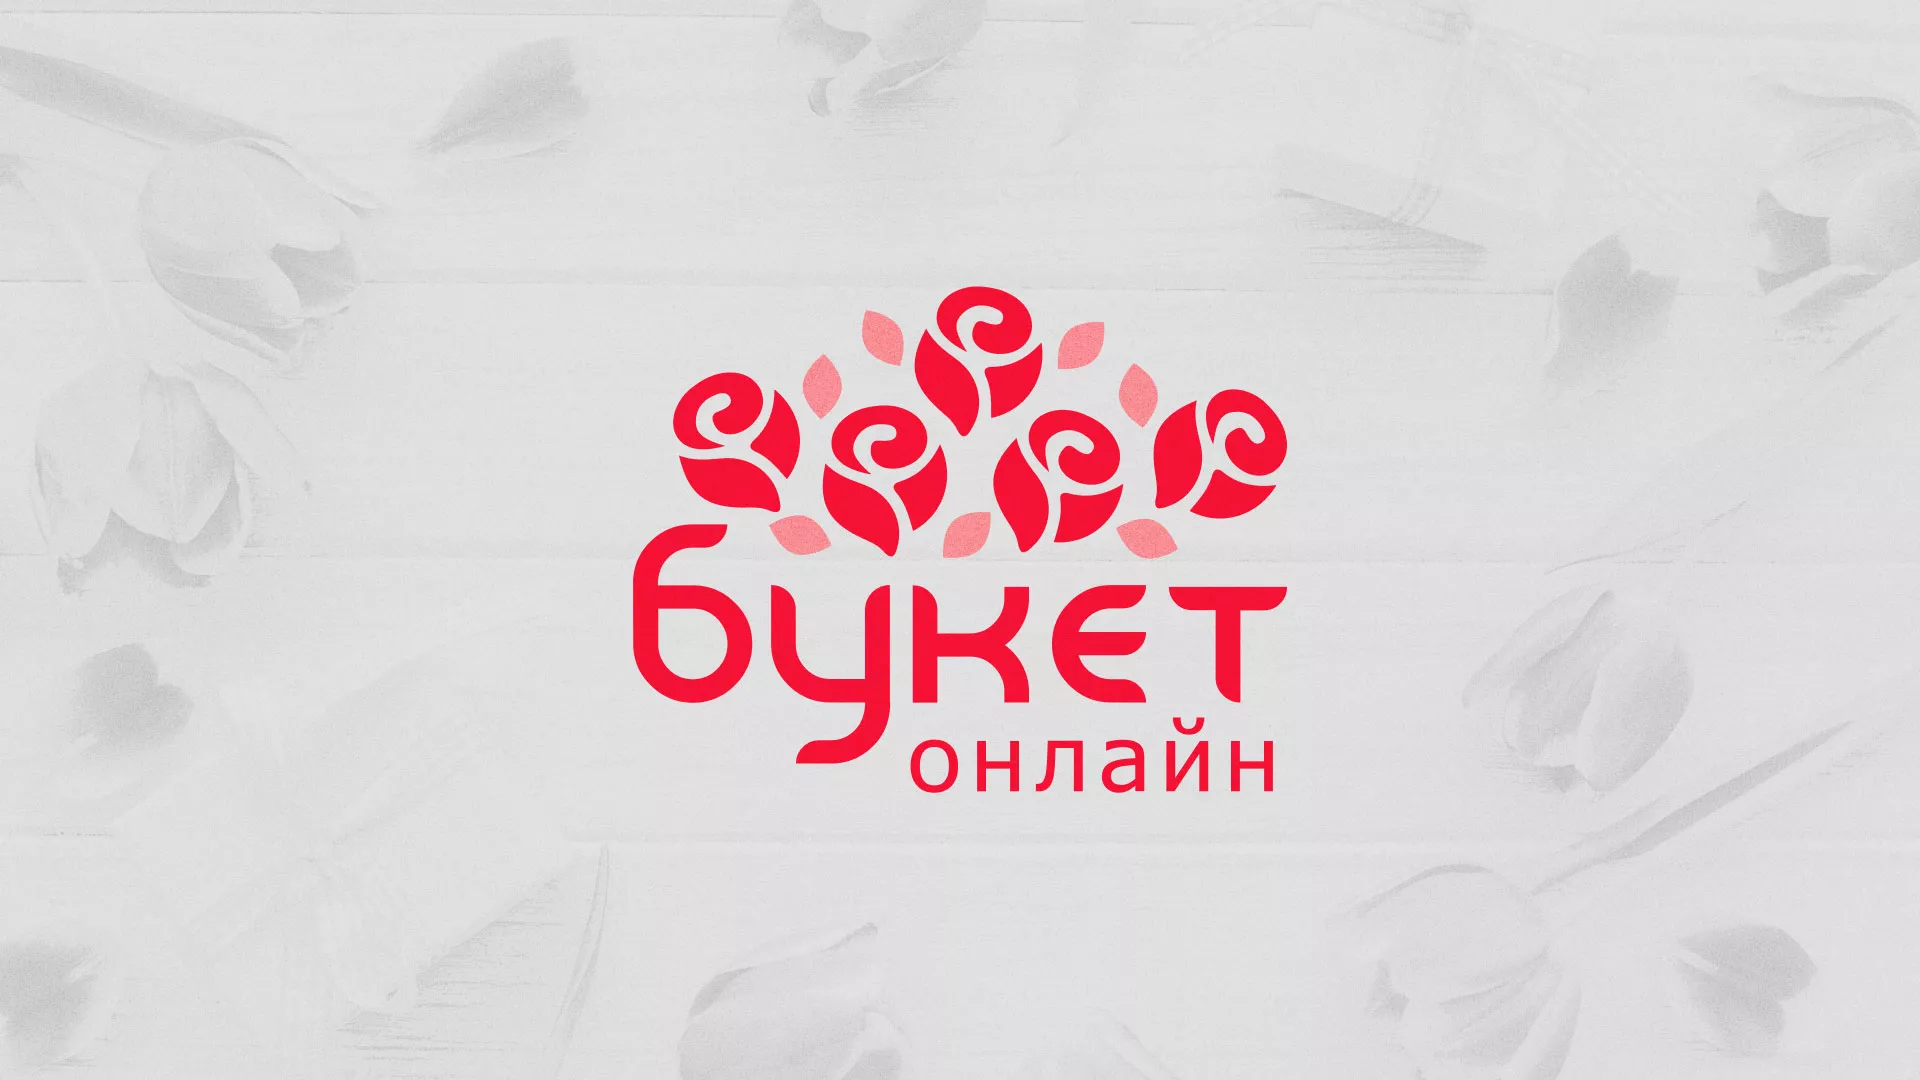 Создание интернет-магазина «Букет-онлайн» по цветам в Электрогорске